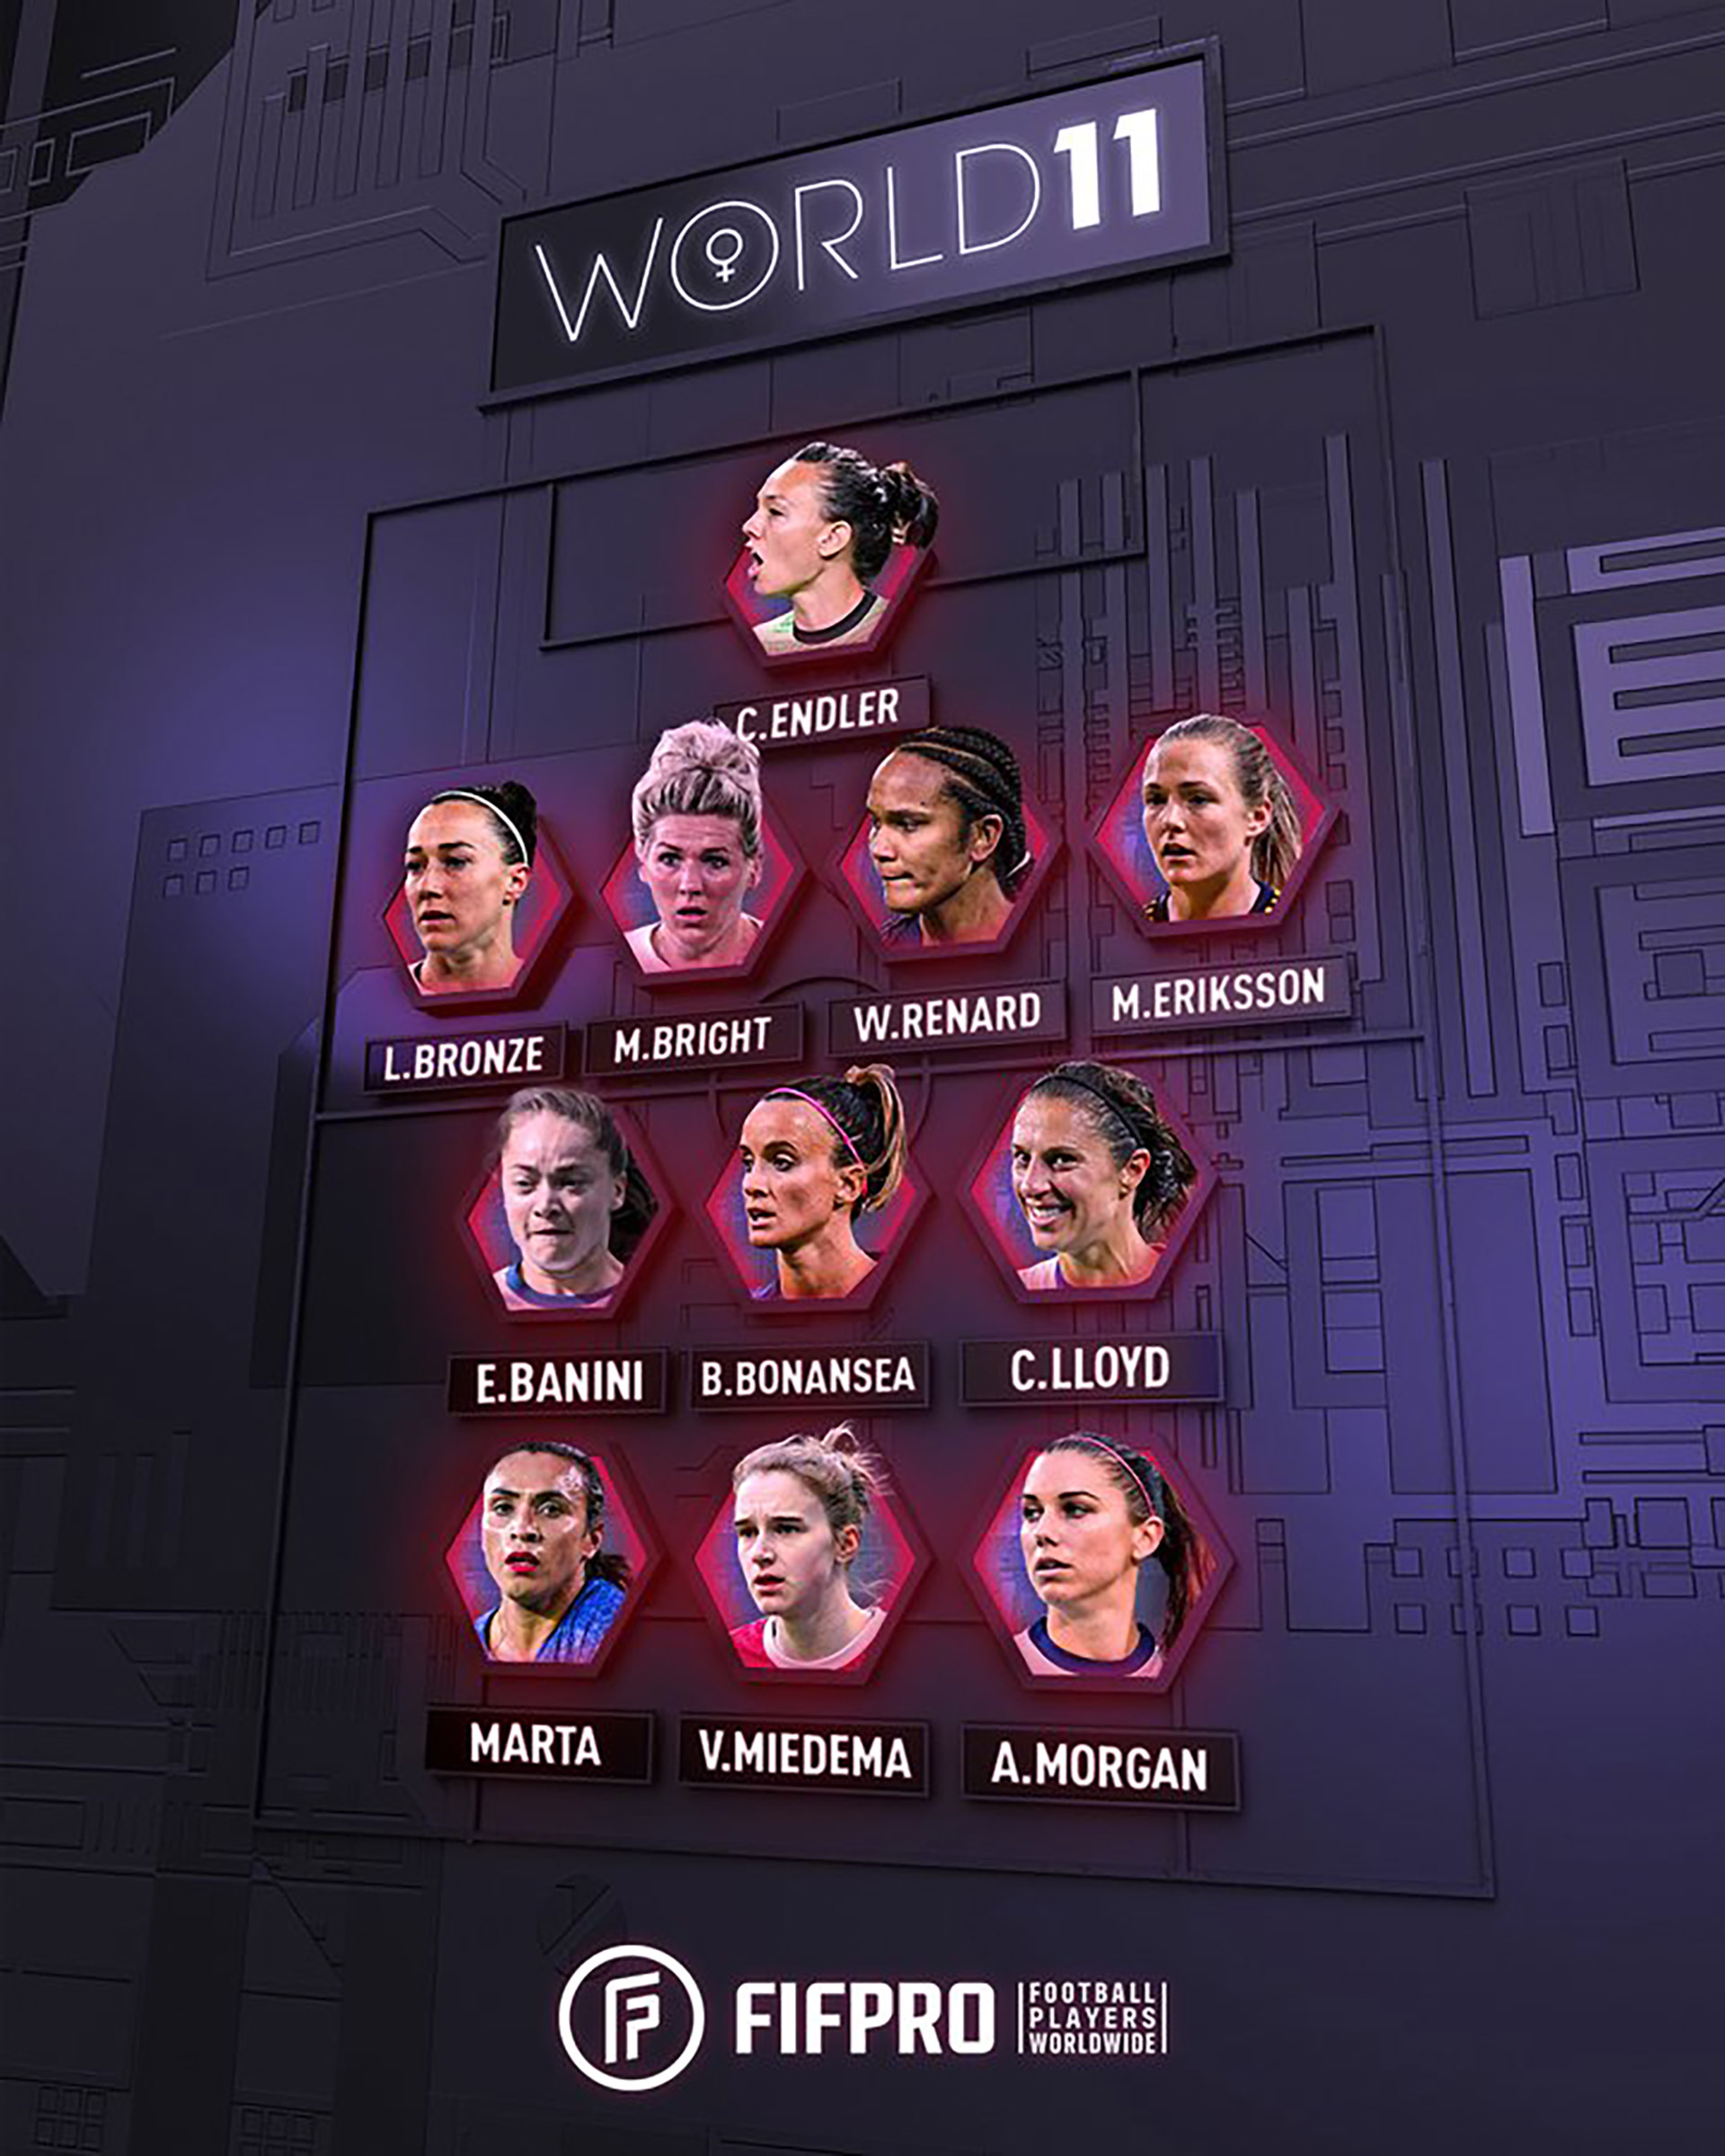 El once ideal femenino de FIFA y Fifpro